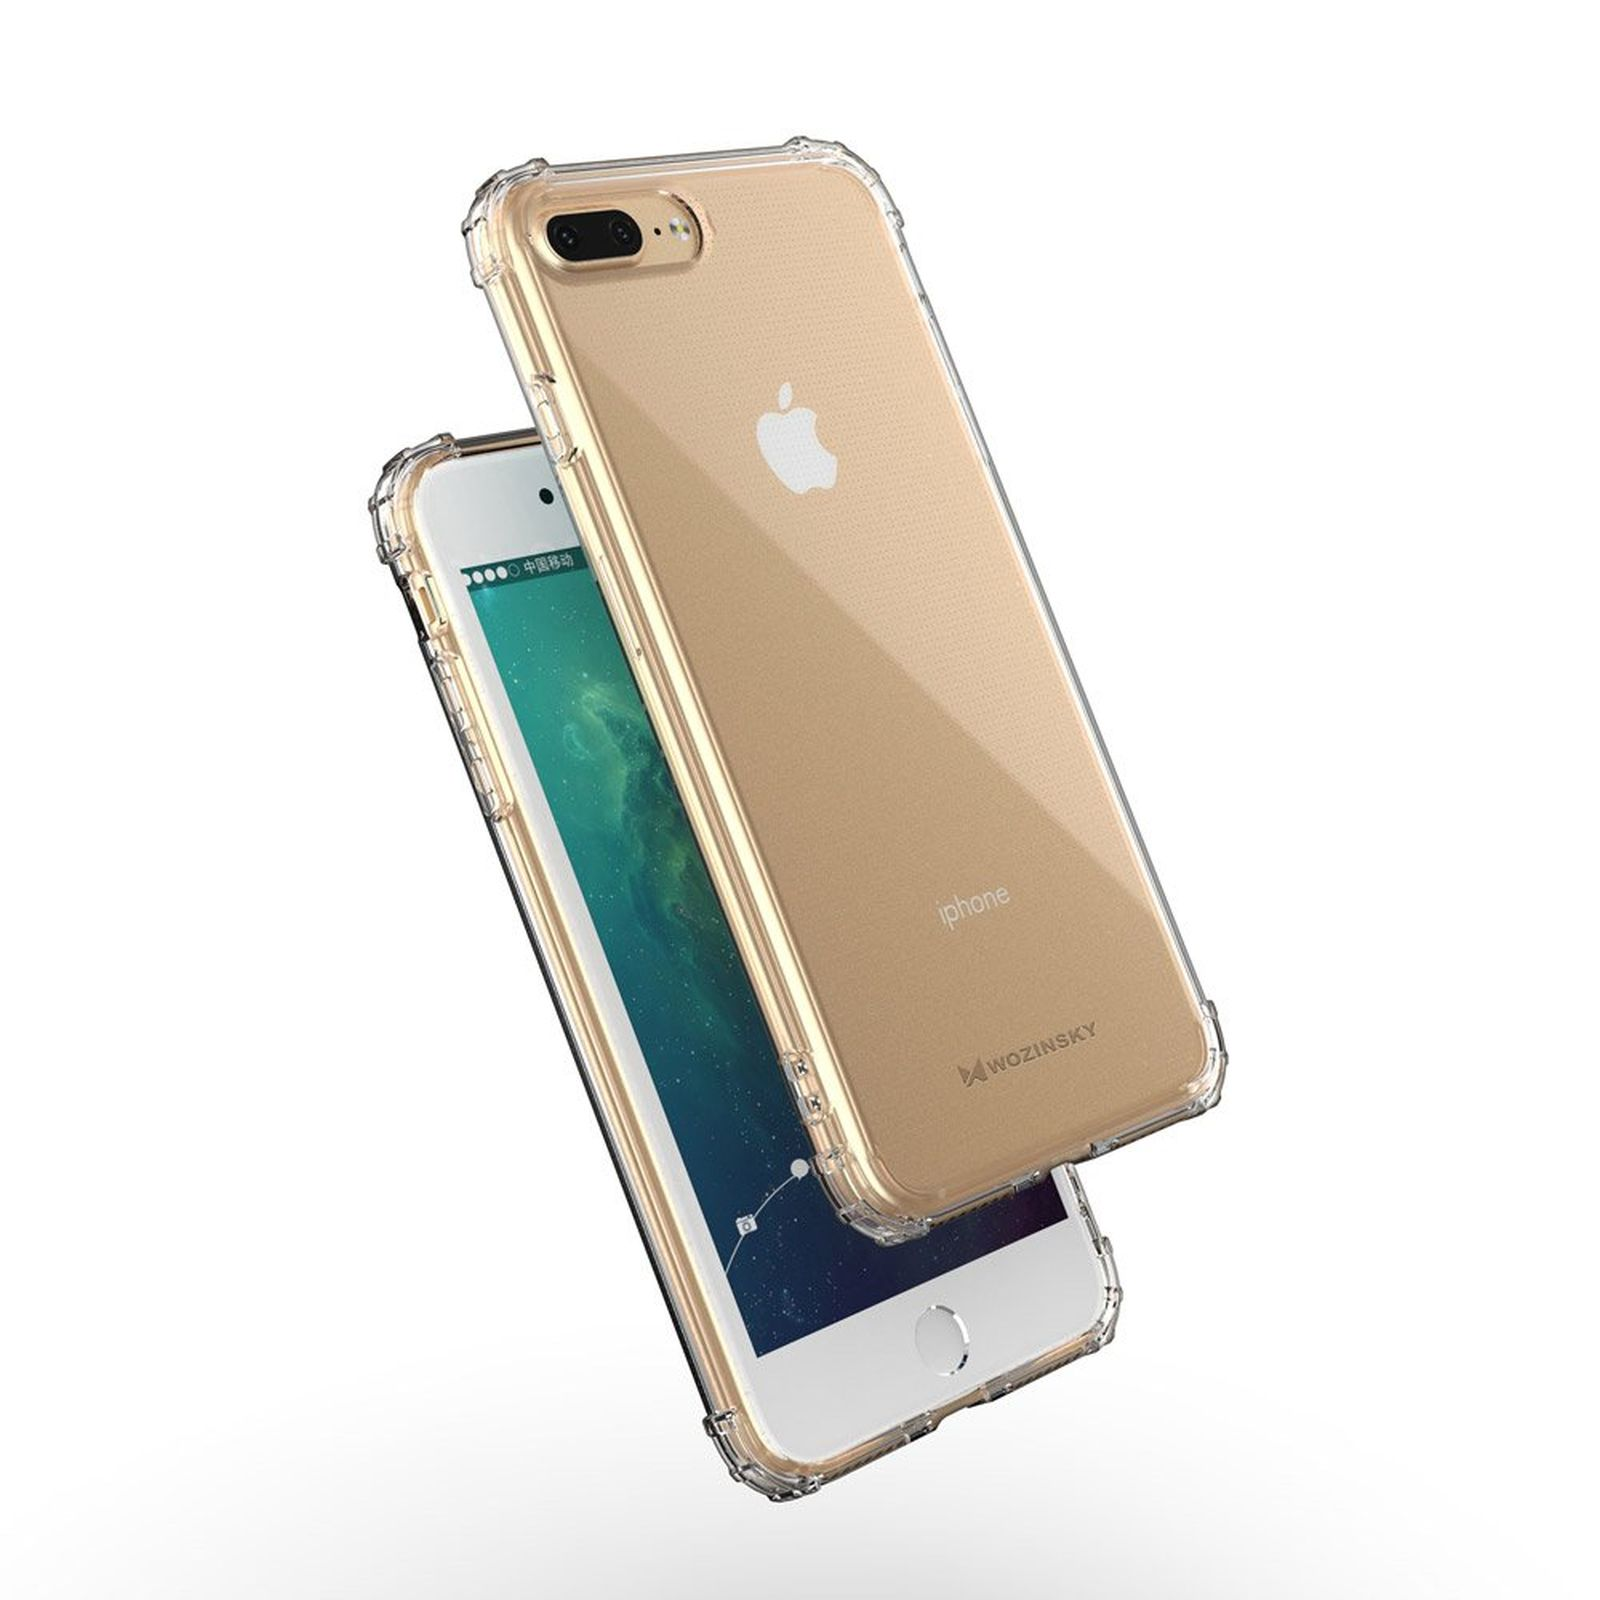 WOZINSKY Roar Armor iPhone 7 Apple, Transparent Case, Plus, Bumper